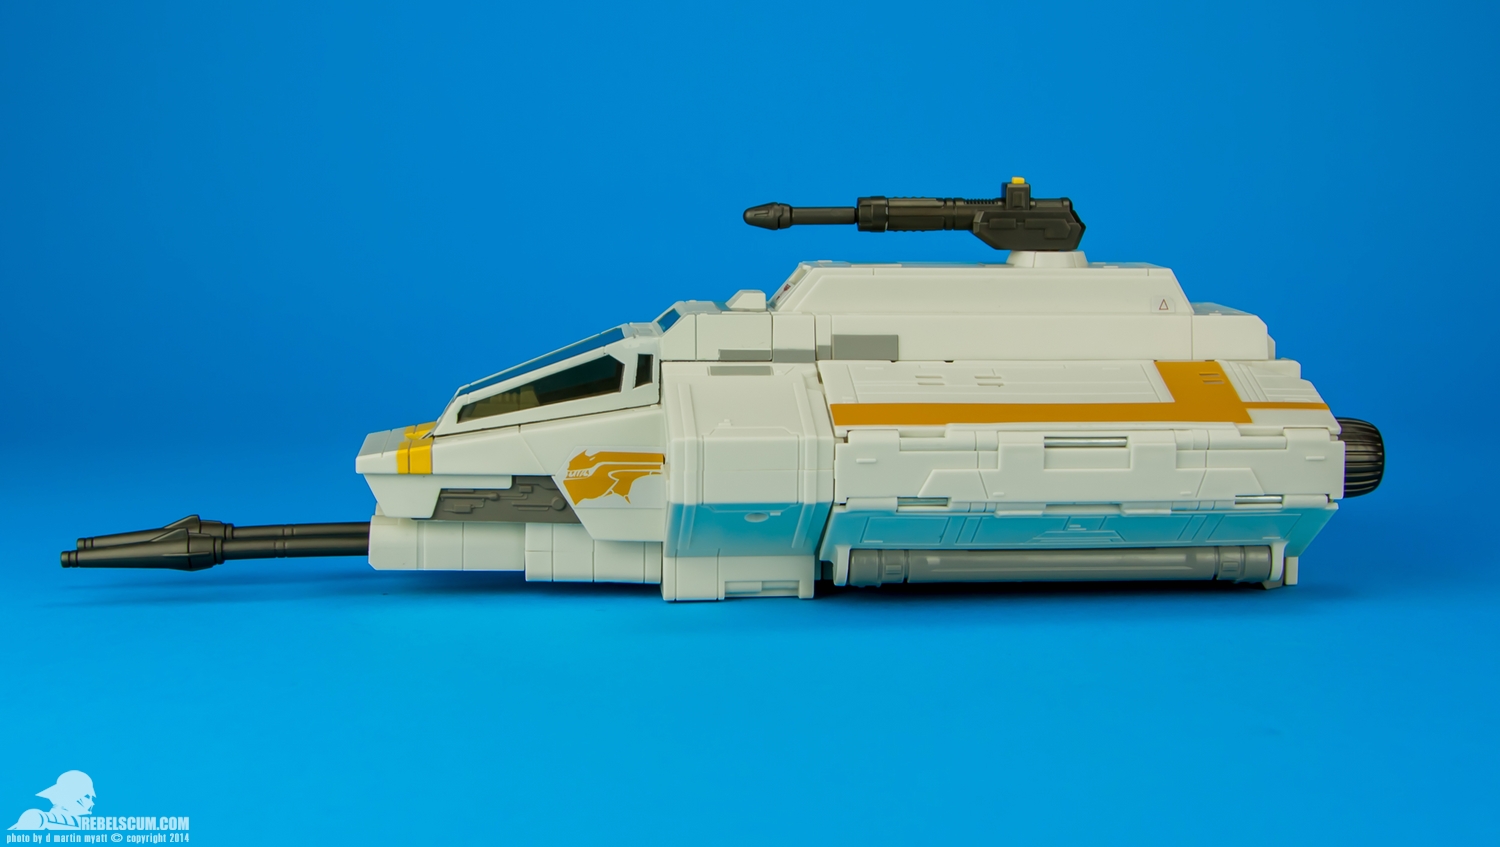 Rebels-Vehicles-series-1-The-Phantom-Attack-Shuttle-003.jpg